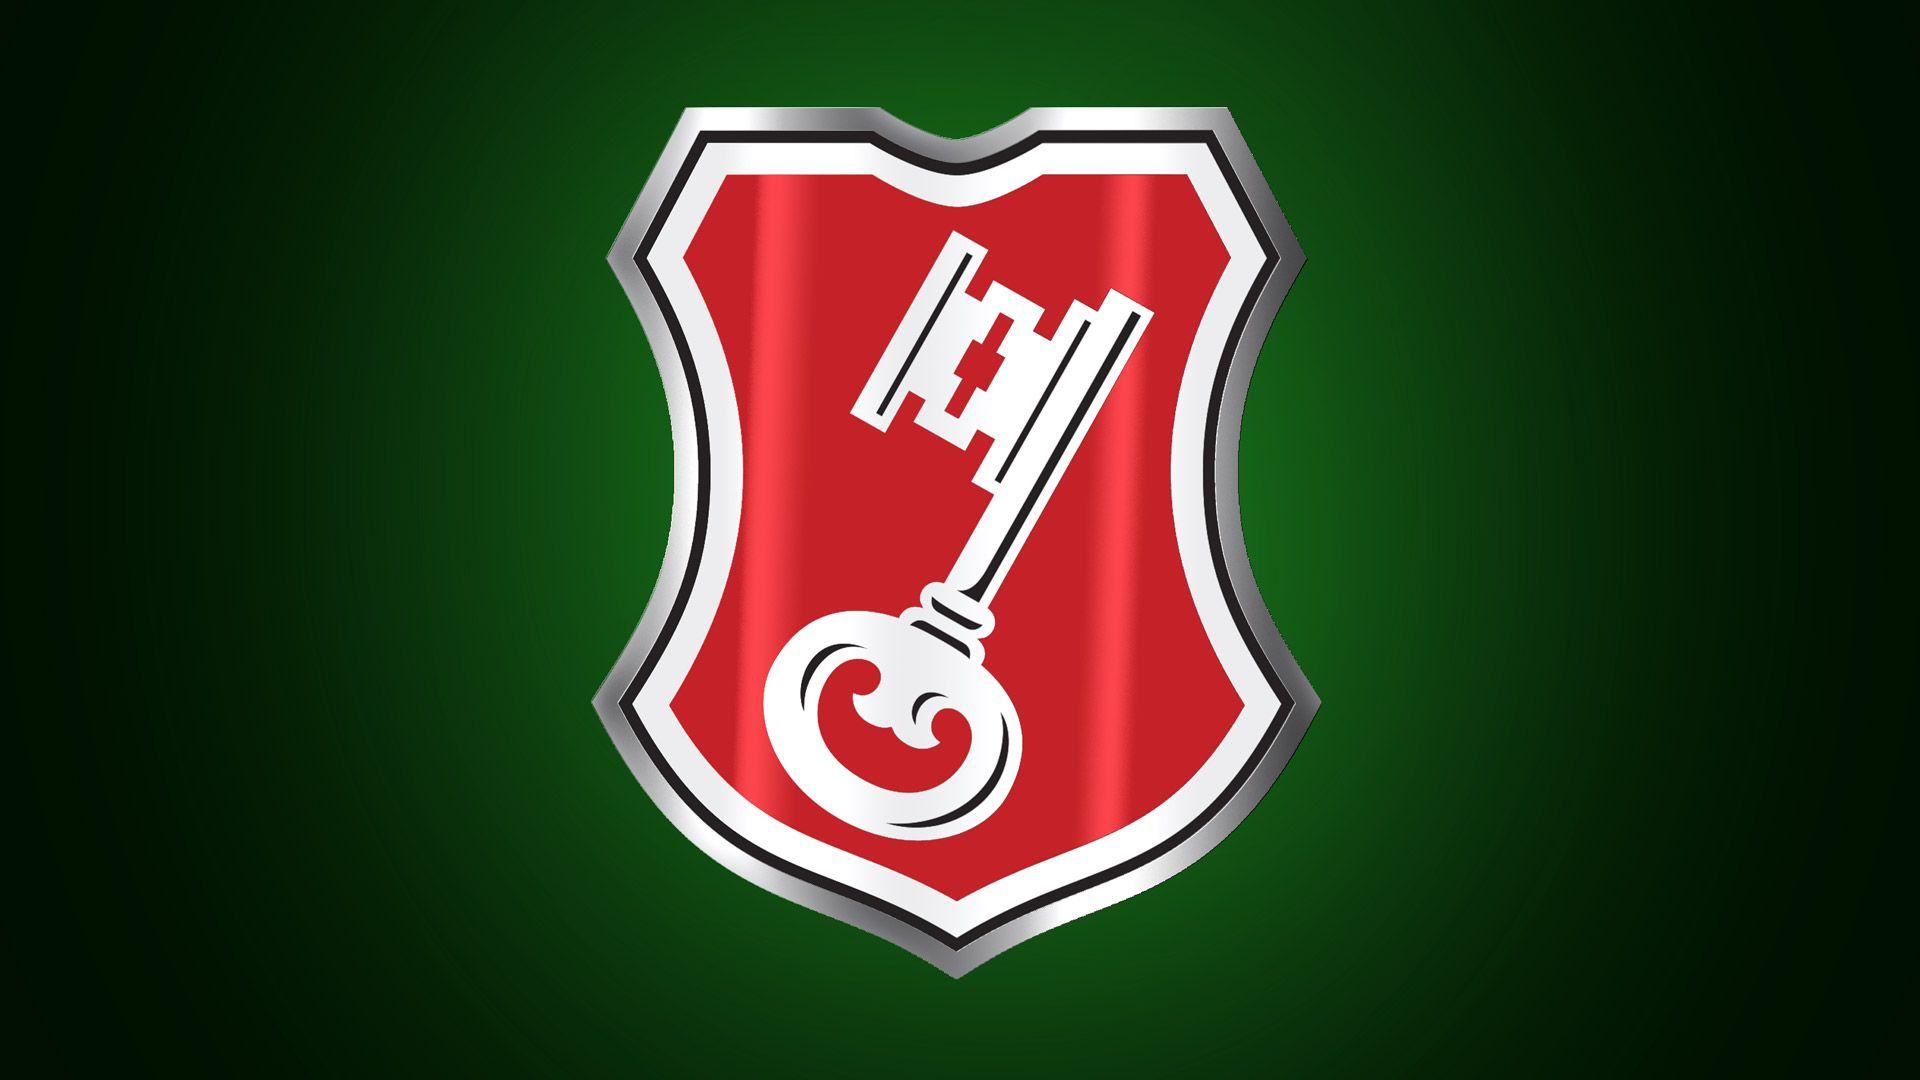 Green and Red Shield Logo - Becks | narita